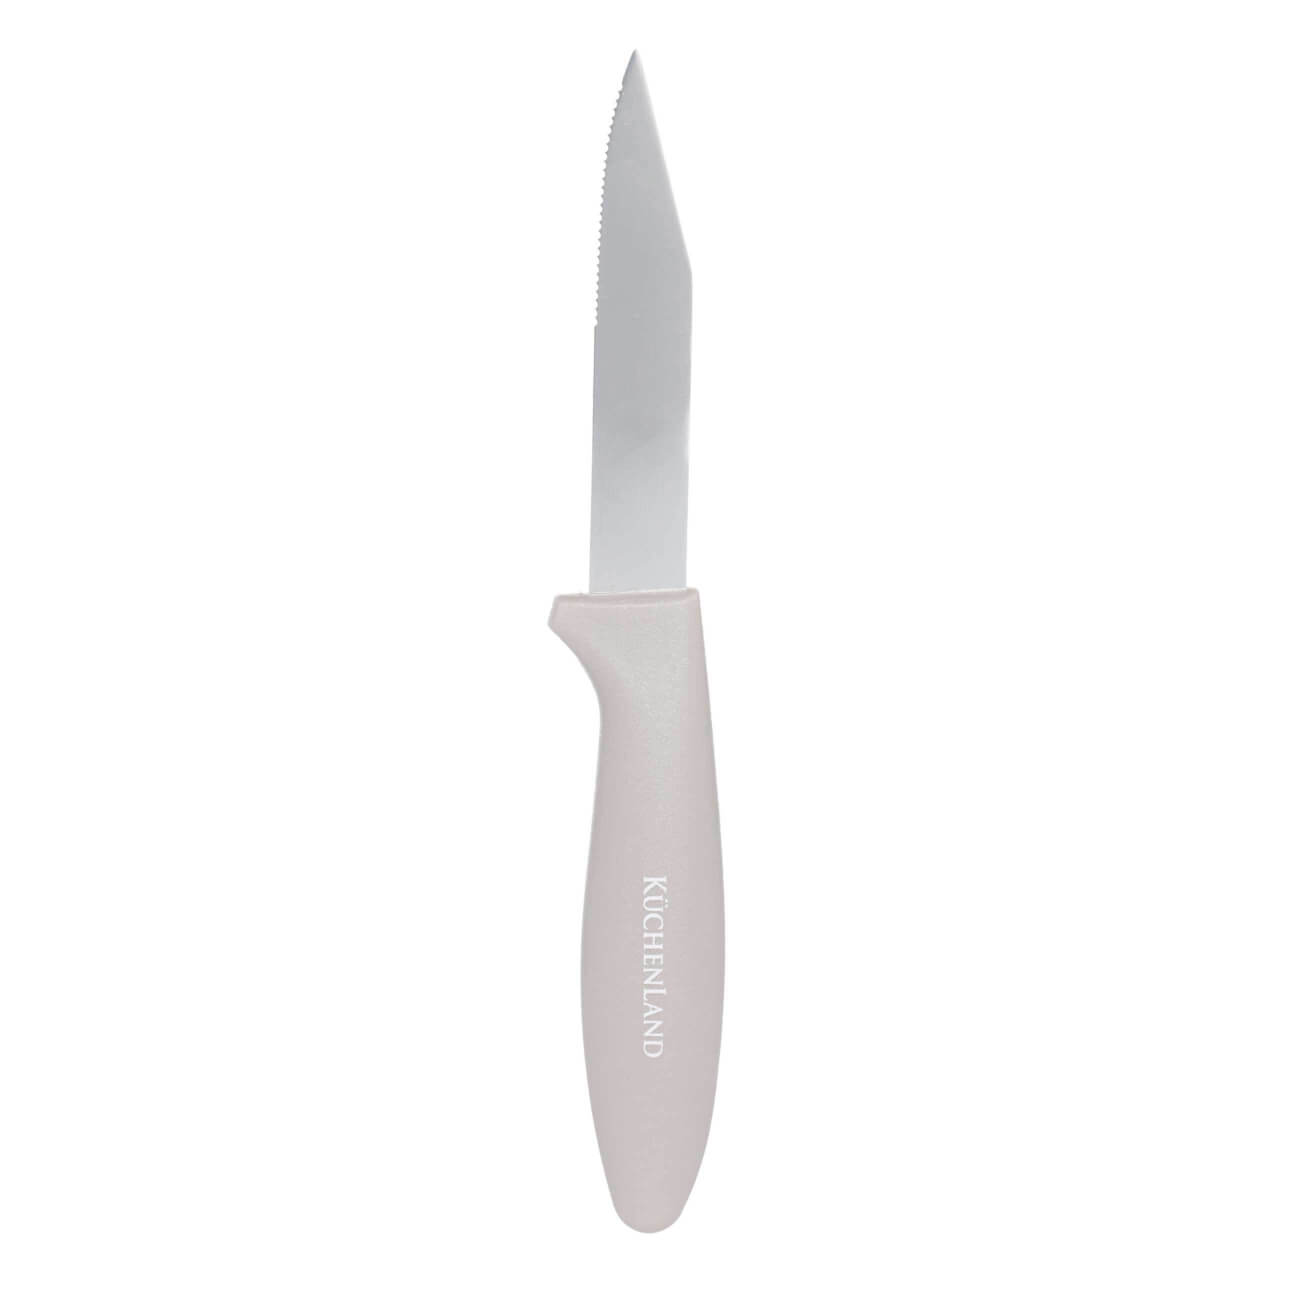 Нож для чистки овощей, 8 см, сталь/пластик, серо-коричневый, Regular kuchenland нож для чистки овощей 9 см сталь пластик actual